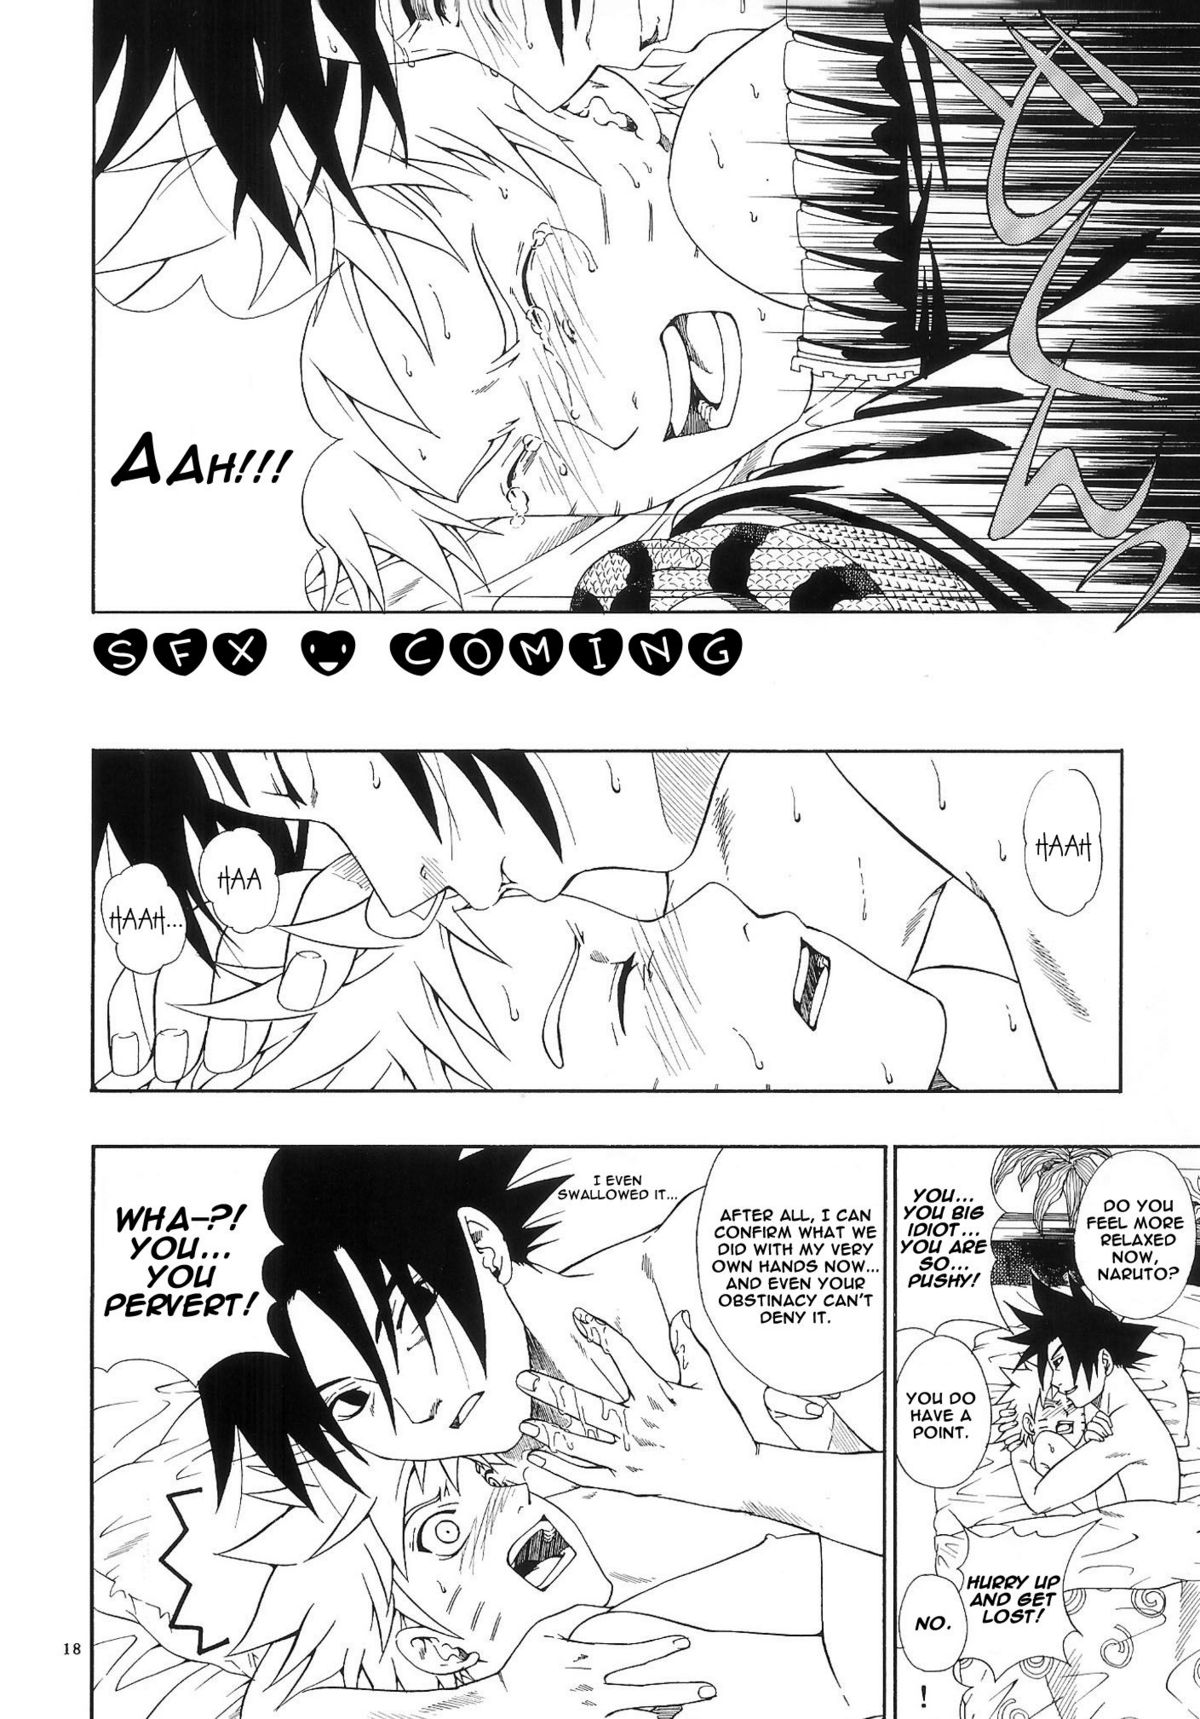 ERO ERO²: Volume 1.5  (NARUTO) [Sasuke X Naruto] YAOI -ENG- page 17 full